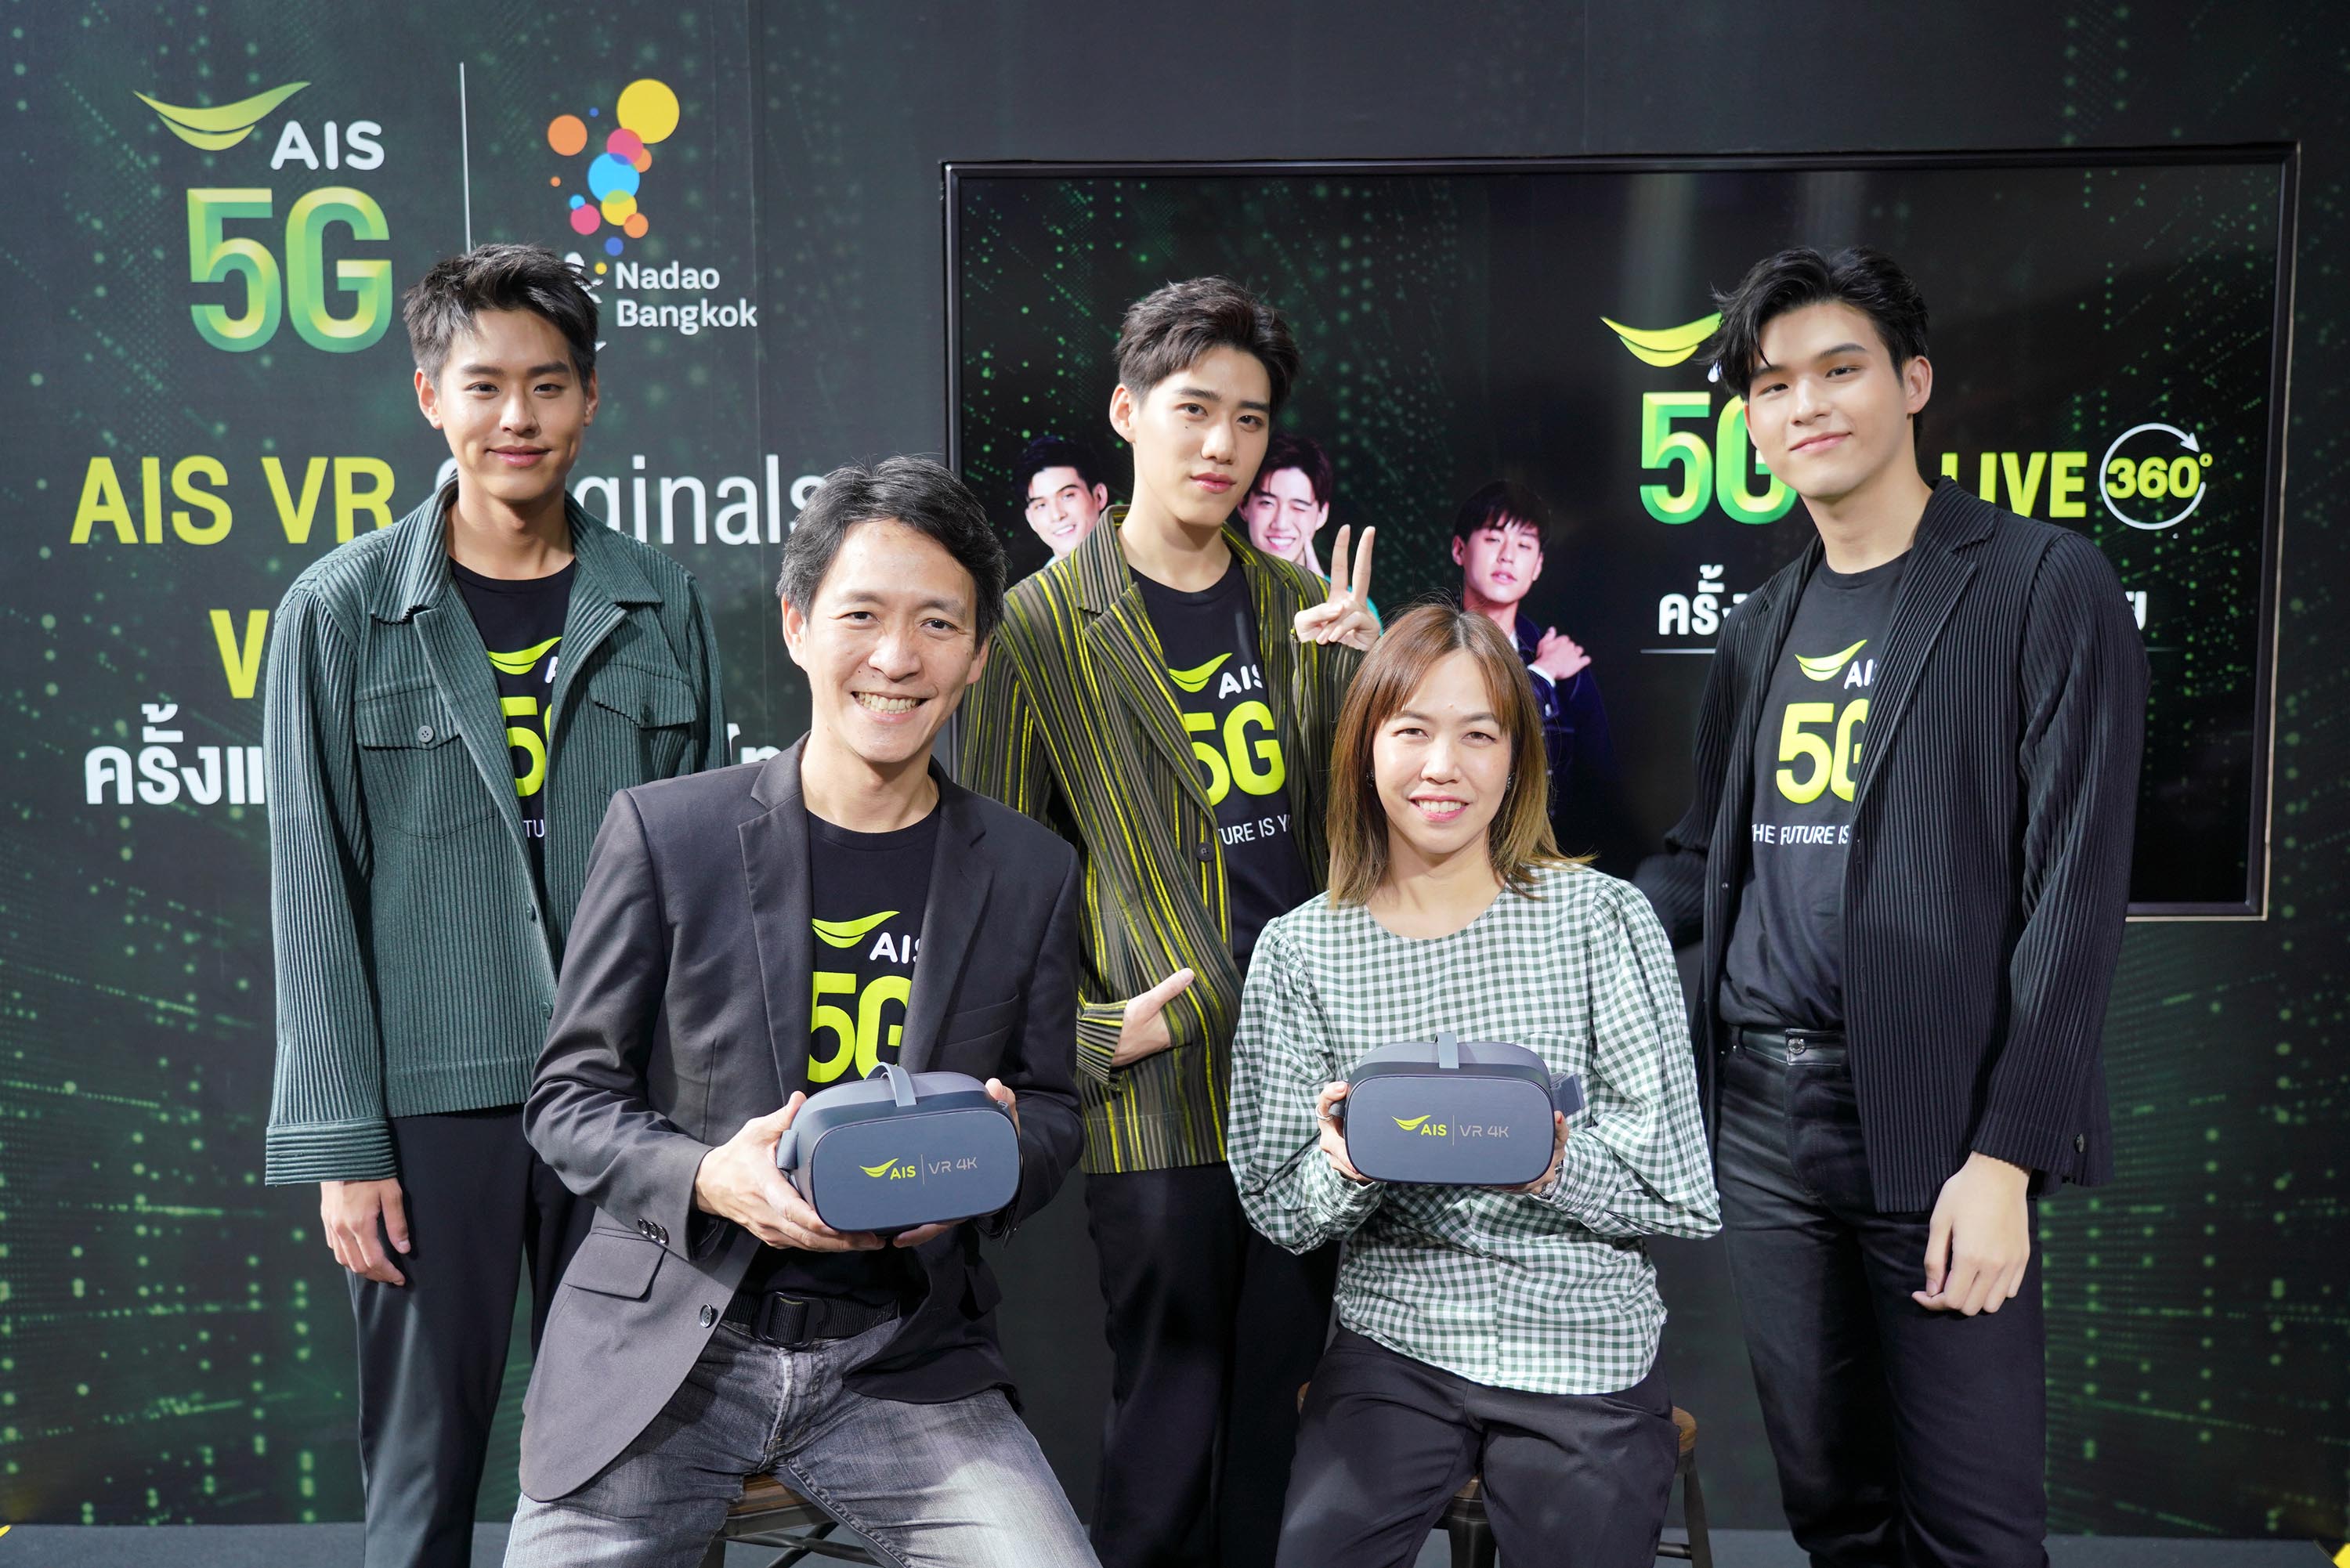 AIS โชว์ล้ำ จัดจริง The First 5G VR live streaming รายแรกในไทย ผนึก นาดาวฯ ดึงศิลปินเรียกเสียงกรี๊ด กระหึ่มแฟนมีท